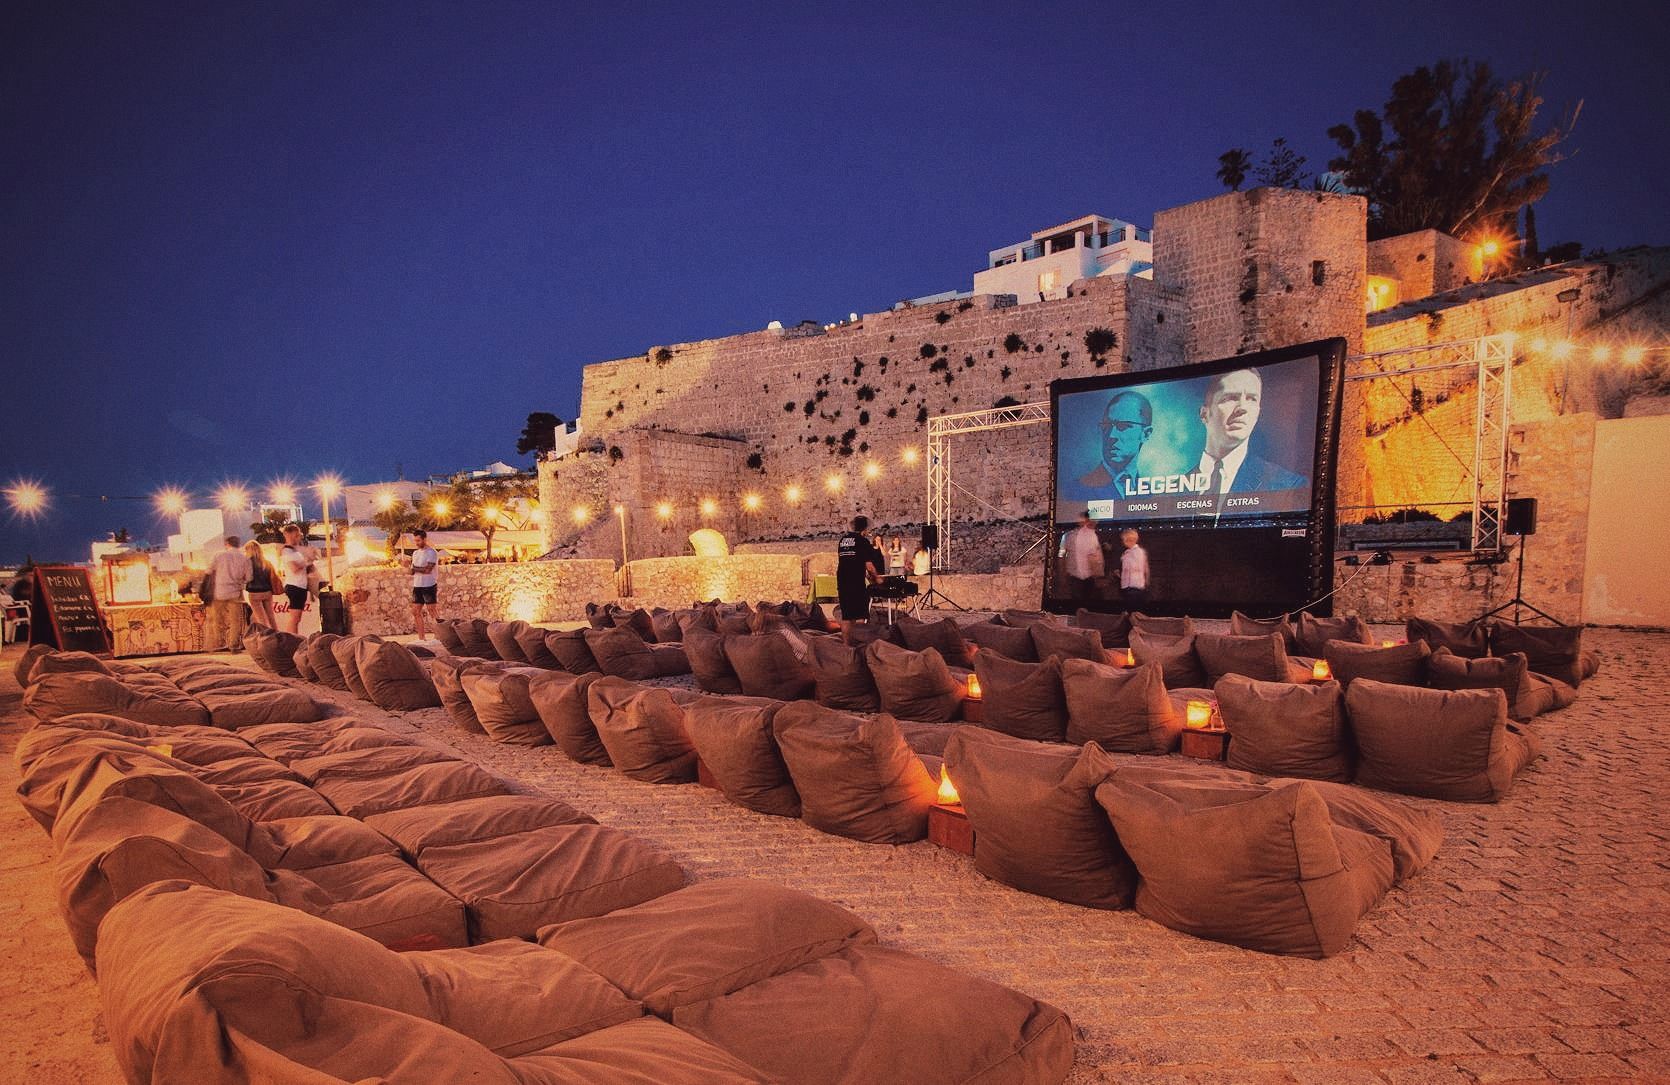 Cinema Paradiso Ibiza